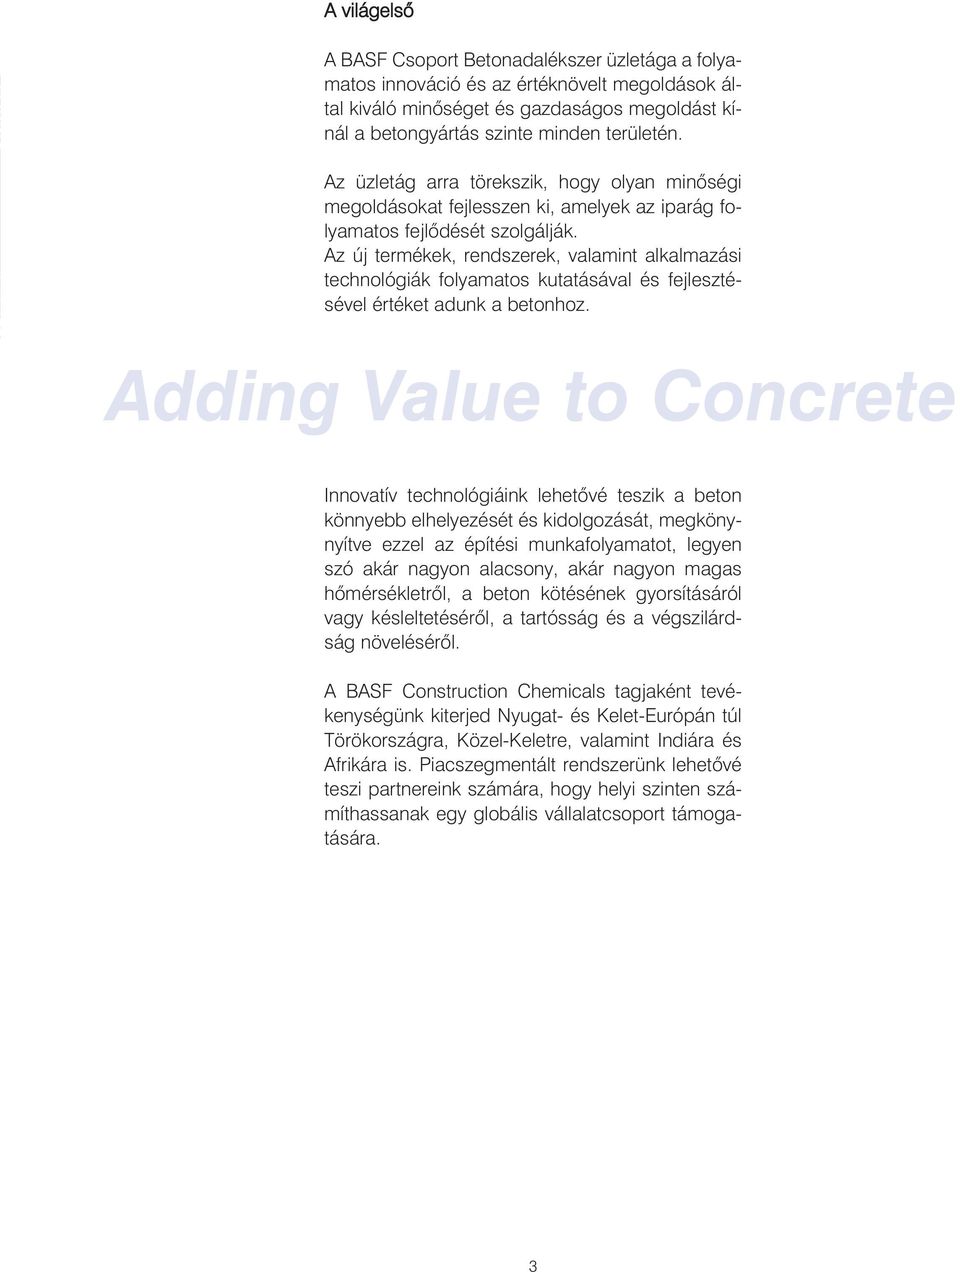 Az új termékek, rendszerek, valamint alkalmazási technológiák folyamatos kutatásával és fejlesztésével értéket adunk a betonhoz.